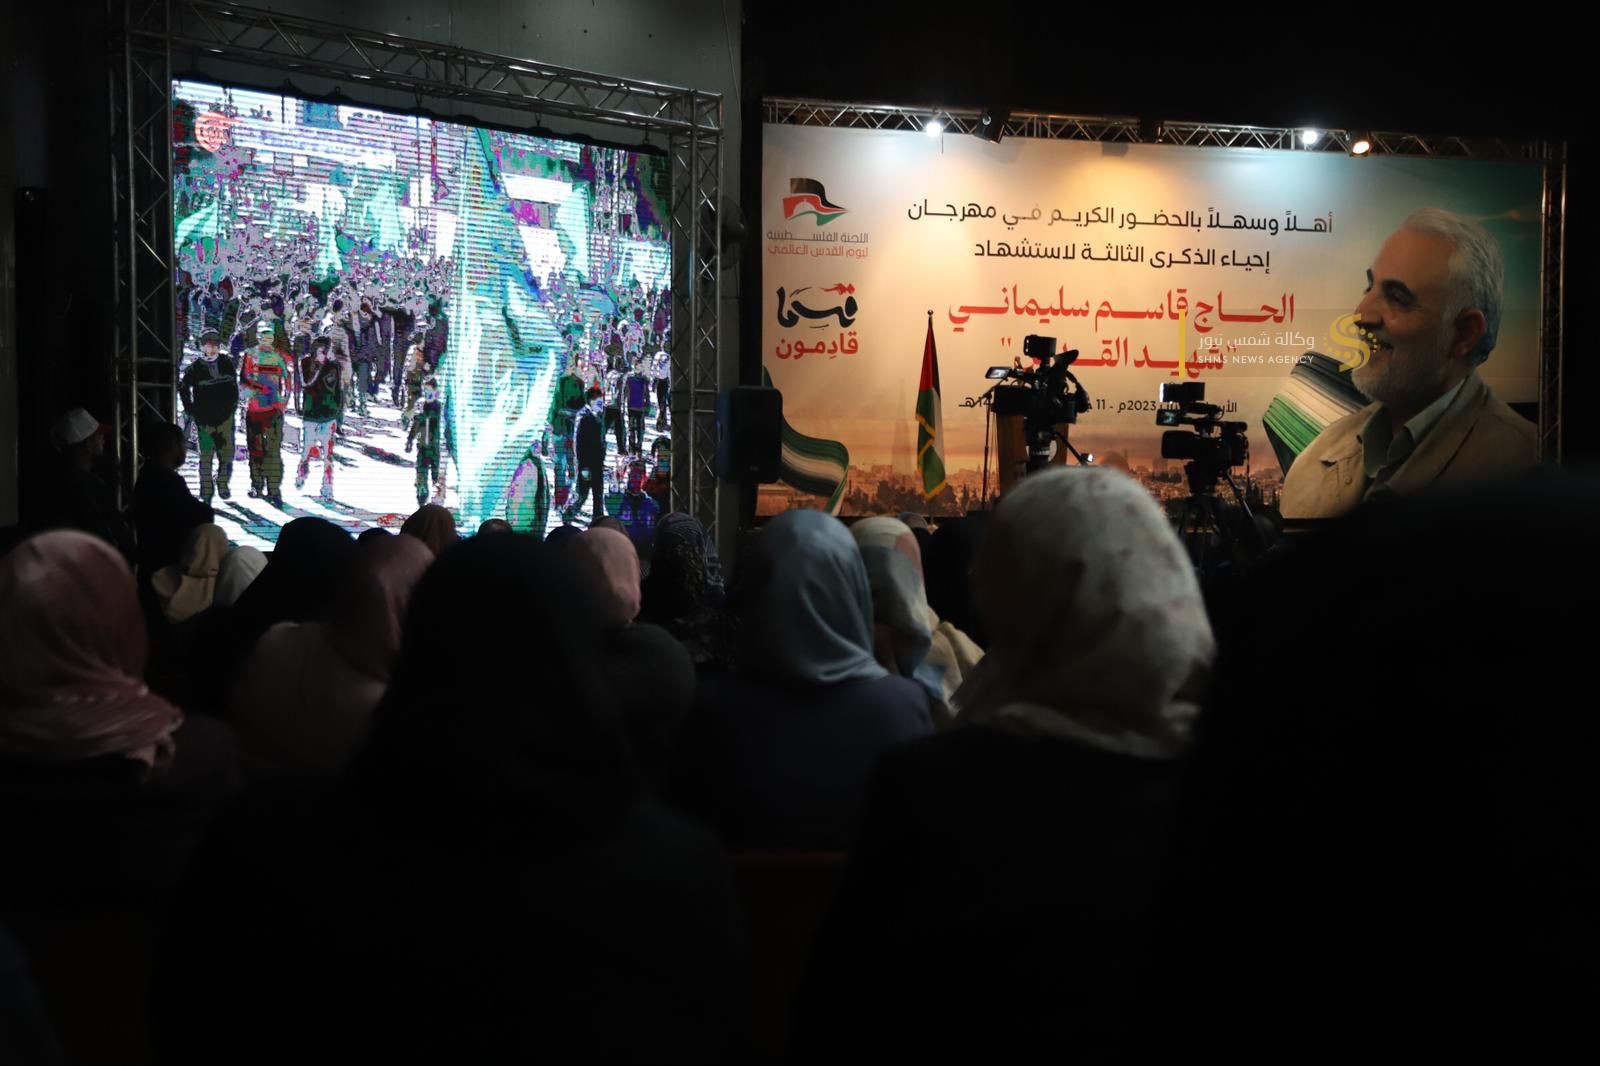 حفل تأبين ذكرى فاسم سليماني في غزة.jfif